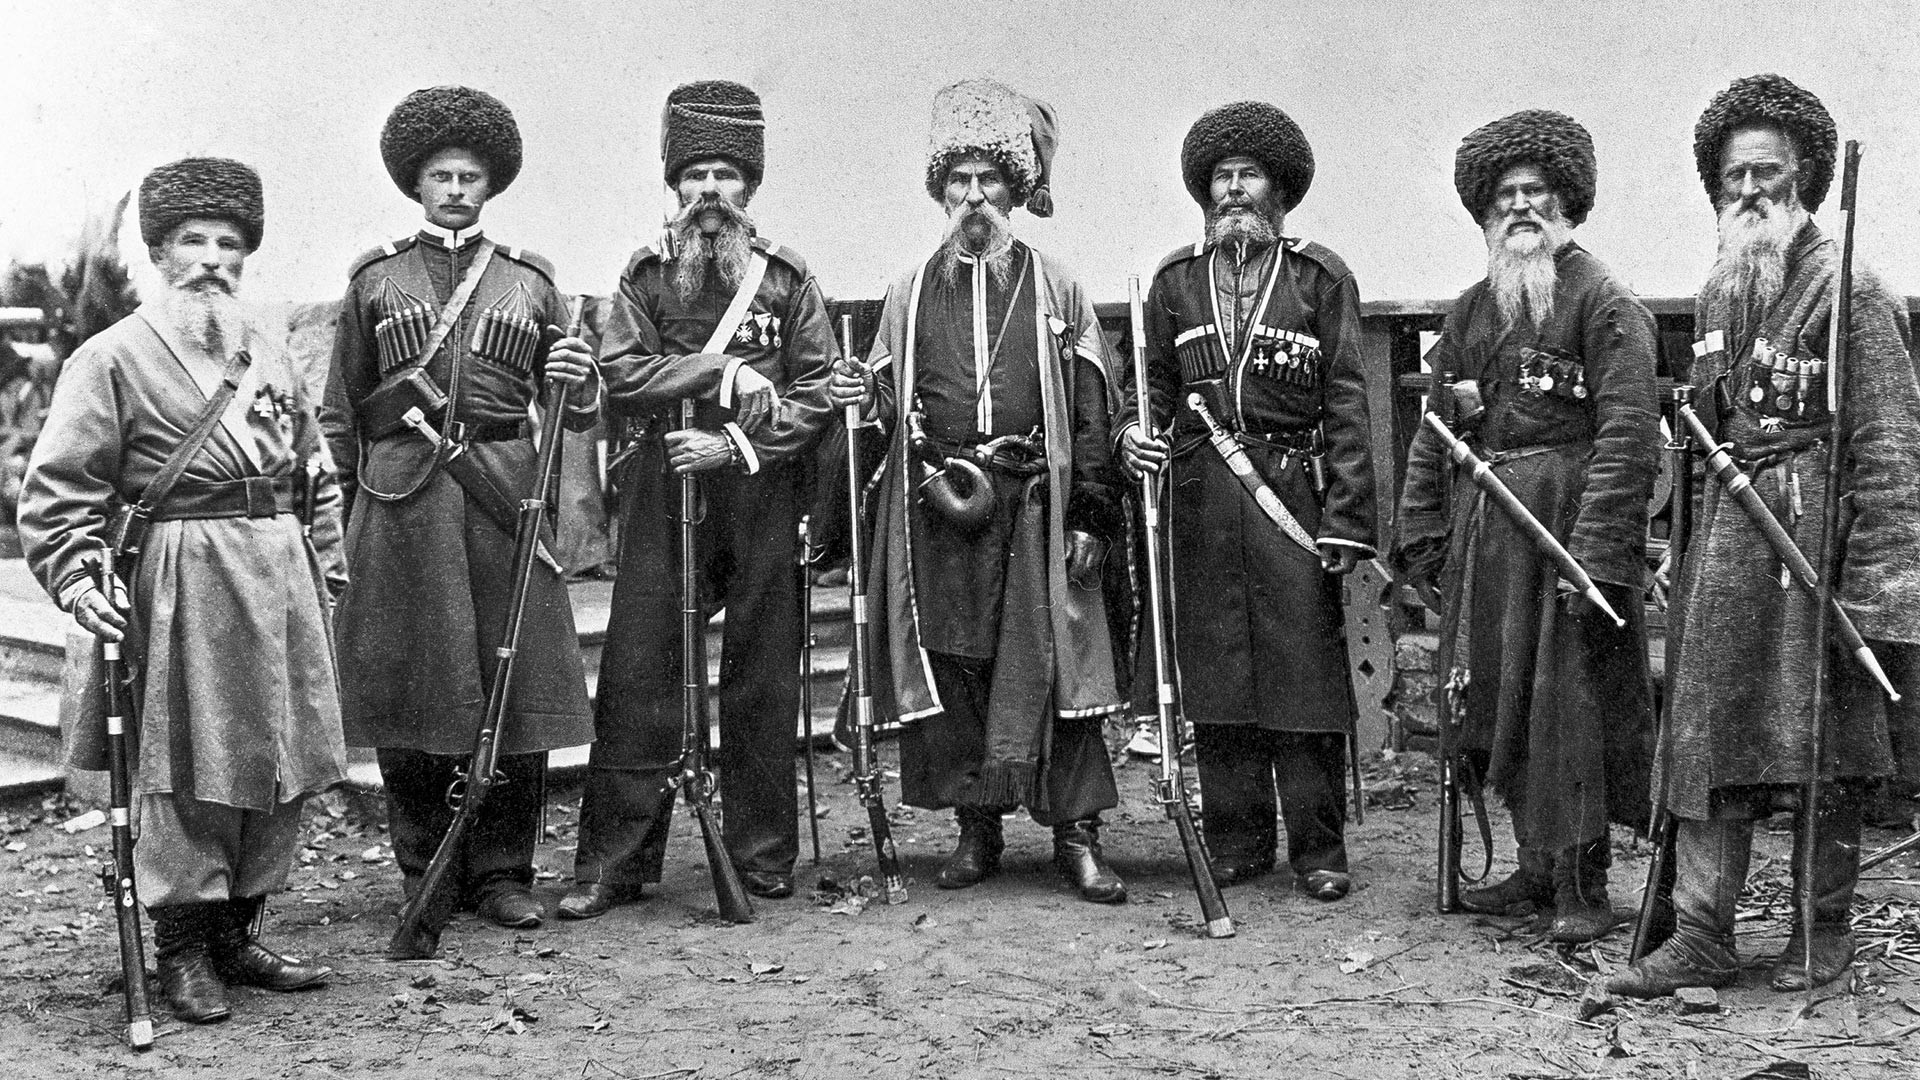  Tarix və mədəni əlaqələr - Don kazakları